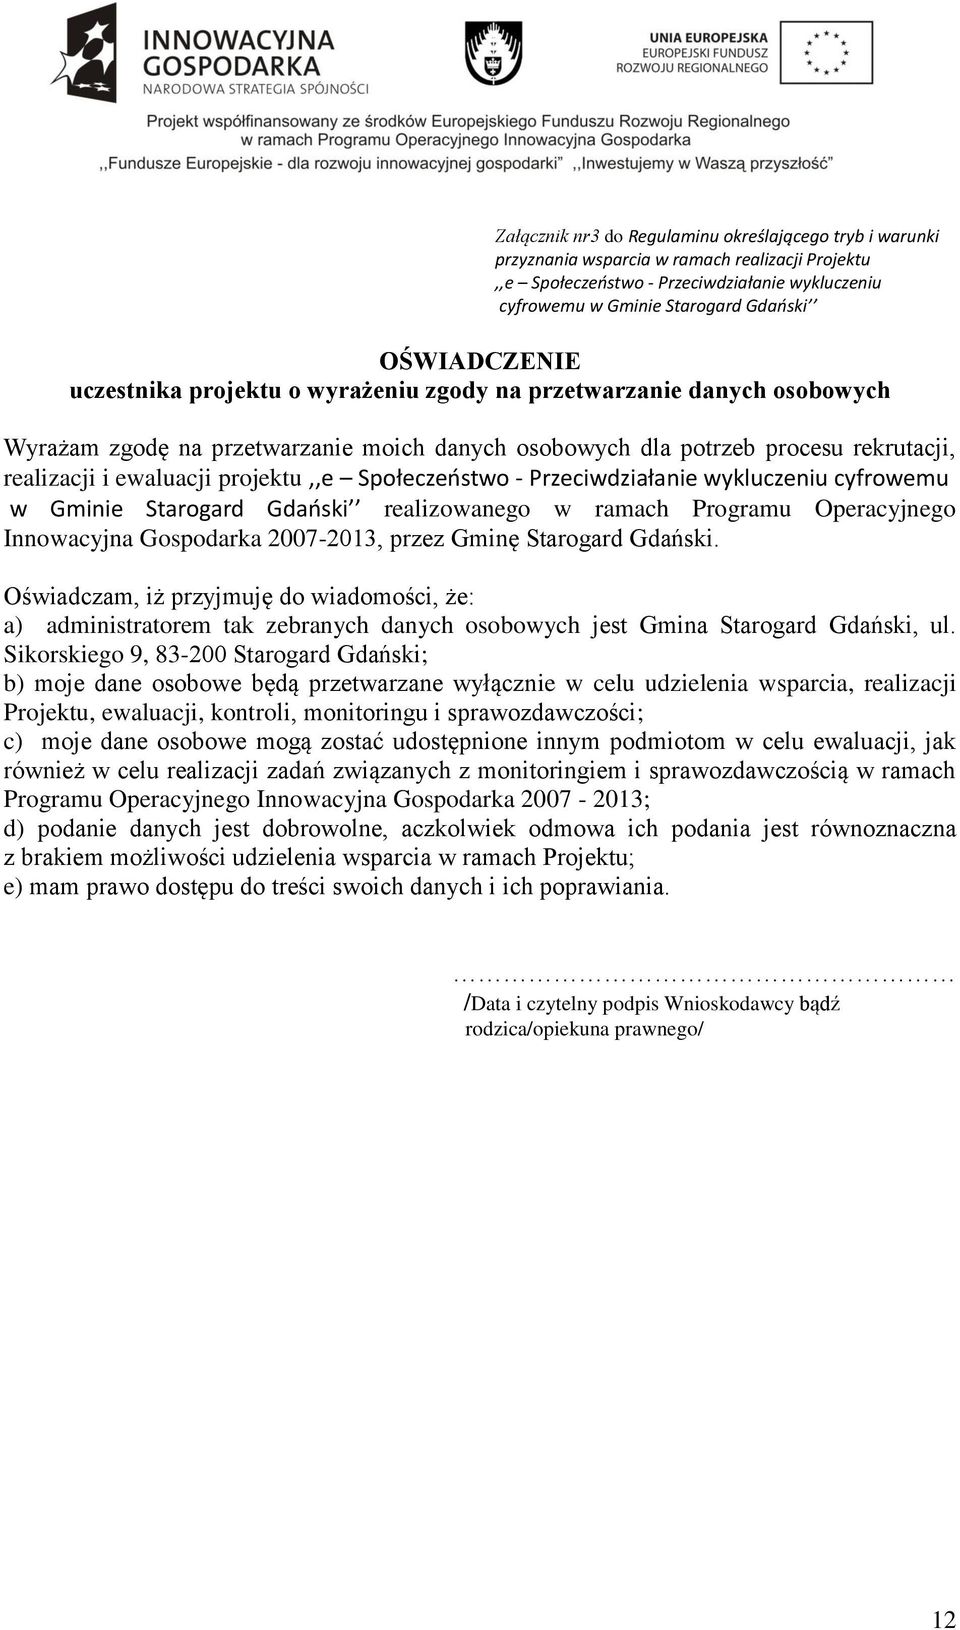 projektu,,e Społeczeństwo - Przeciwdziałanie wykluczeniu cyfrowemu w Gminie Starogard Gdański realizowanego w ramach Programu Operacyjnego Innowacyjna Gospodarka 2007-2013, przez Gminę Starogard